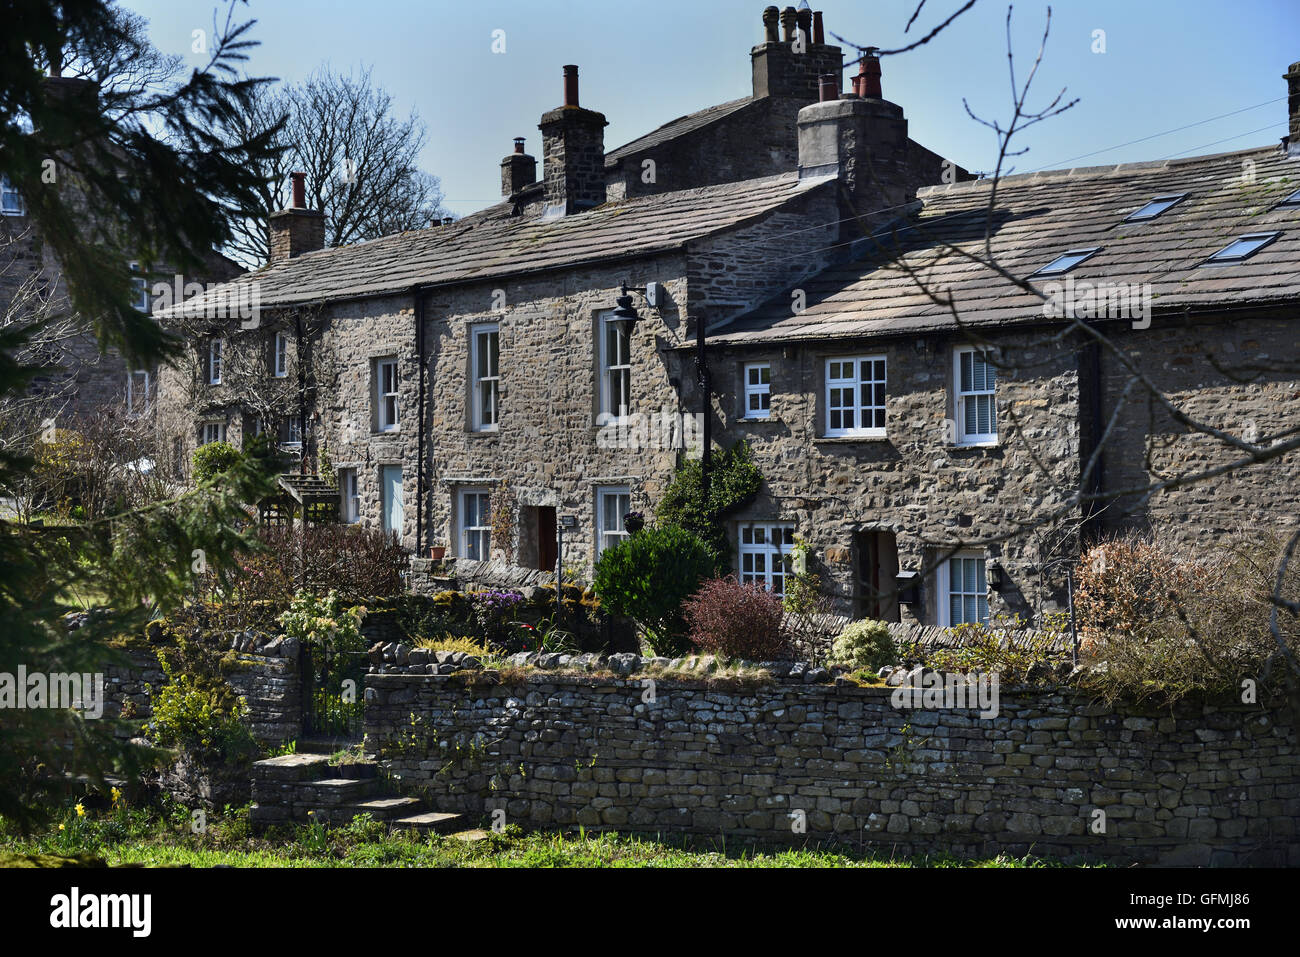 Häuser und Gärten, Gayle Dorf, obere Wensleydale, Yorkshire Dales National Park, North Yorkshire, England, uk. Stockfoto